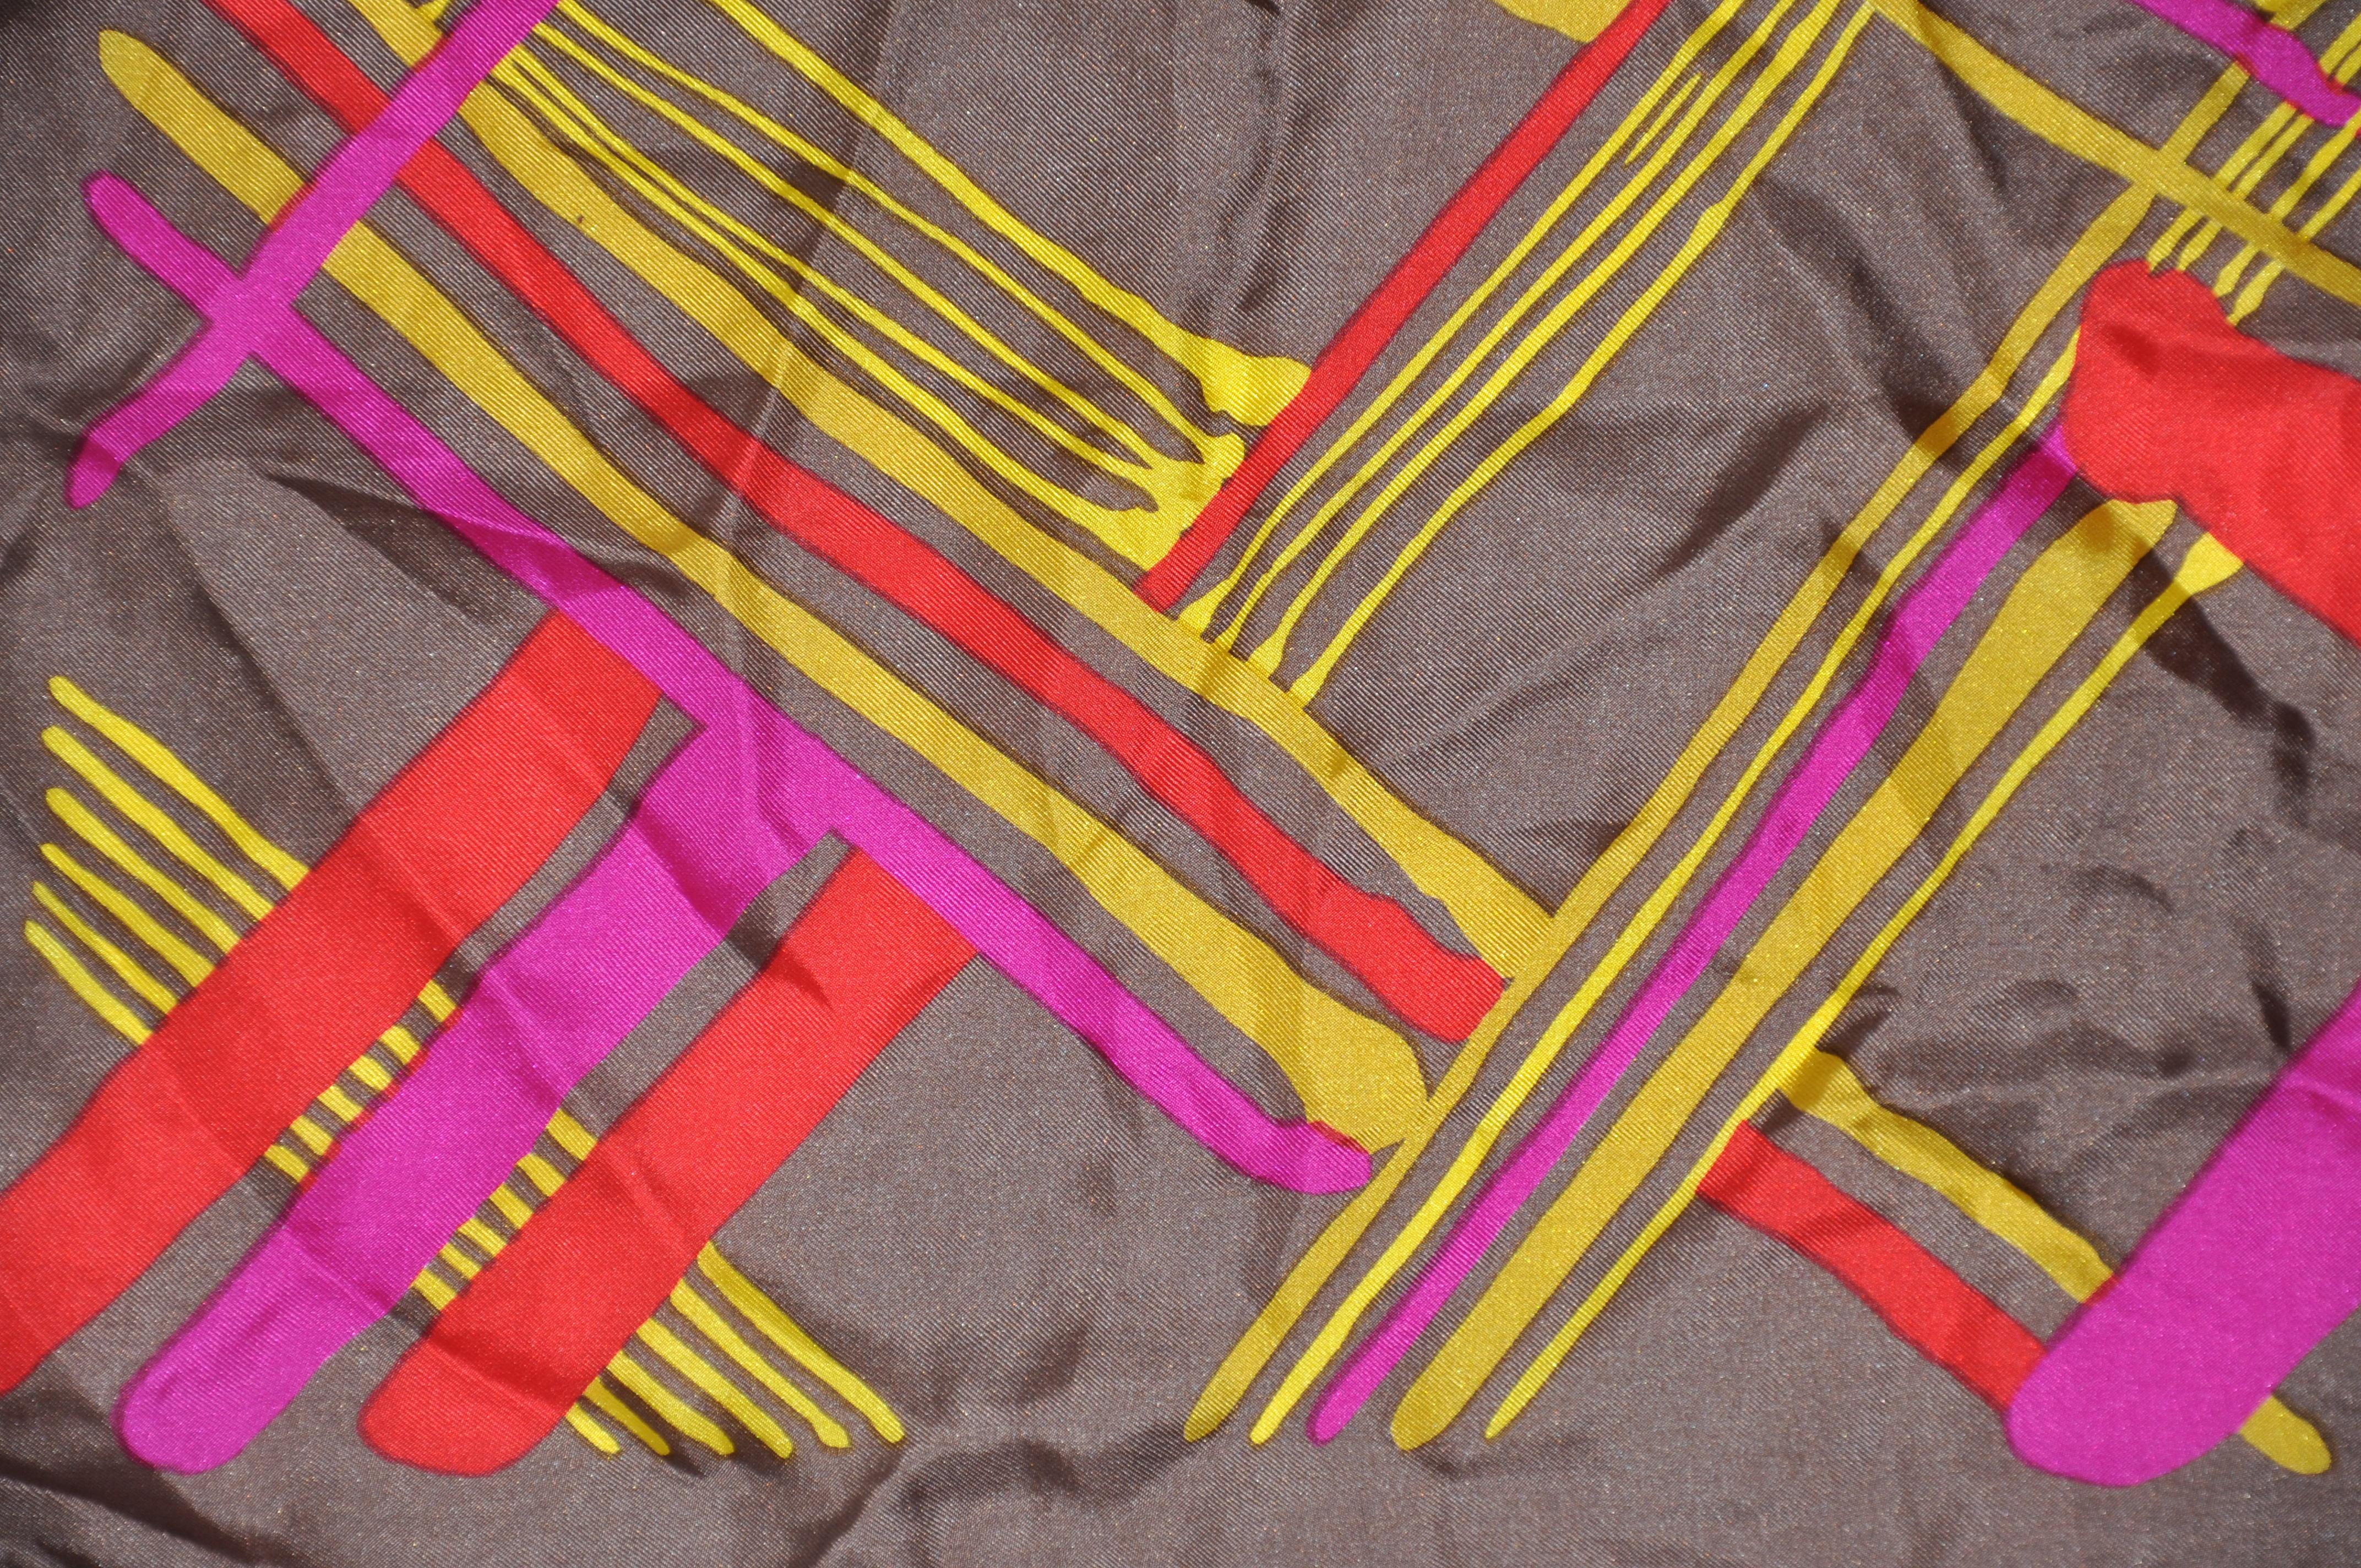      El maravilloso pañuelo de seda multicolor a cuadros escoceses de Burmel, acentuado con bordes rojos enrollados a mano, mide 26 pulgadas por 26 pulgadas. Fabricado en Japón.